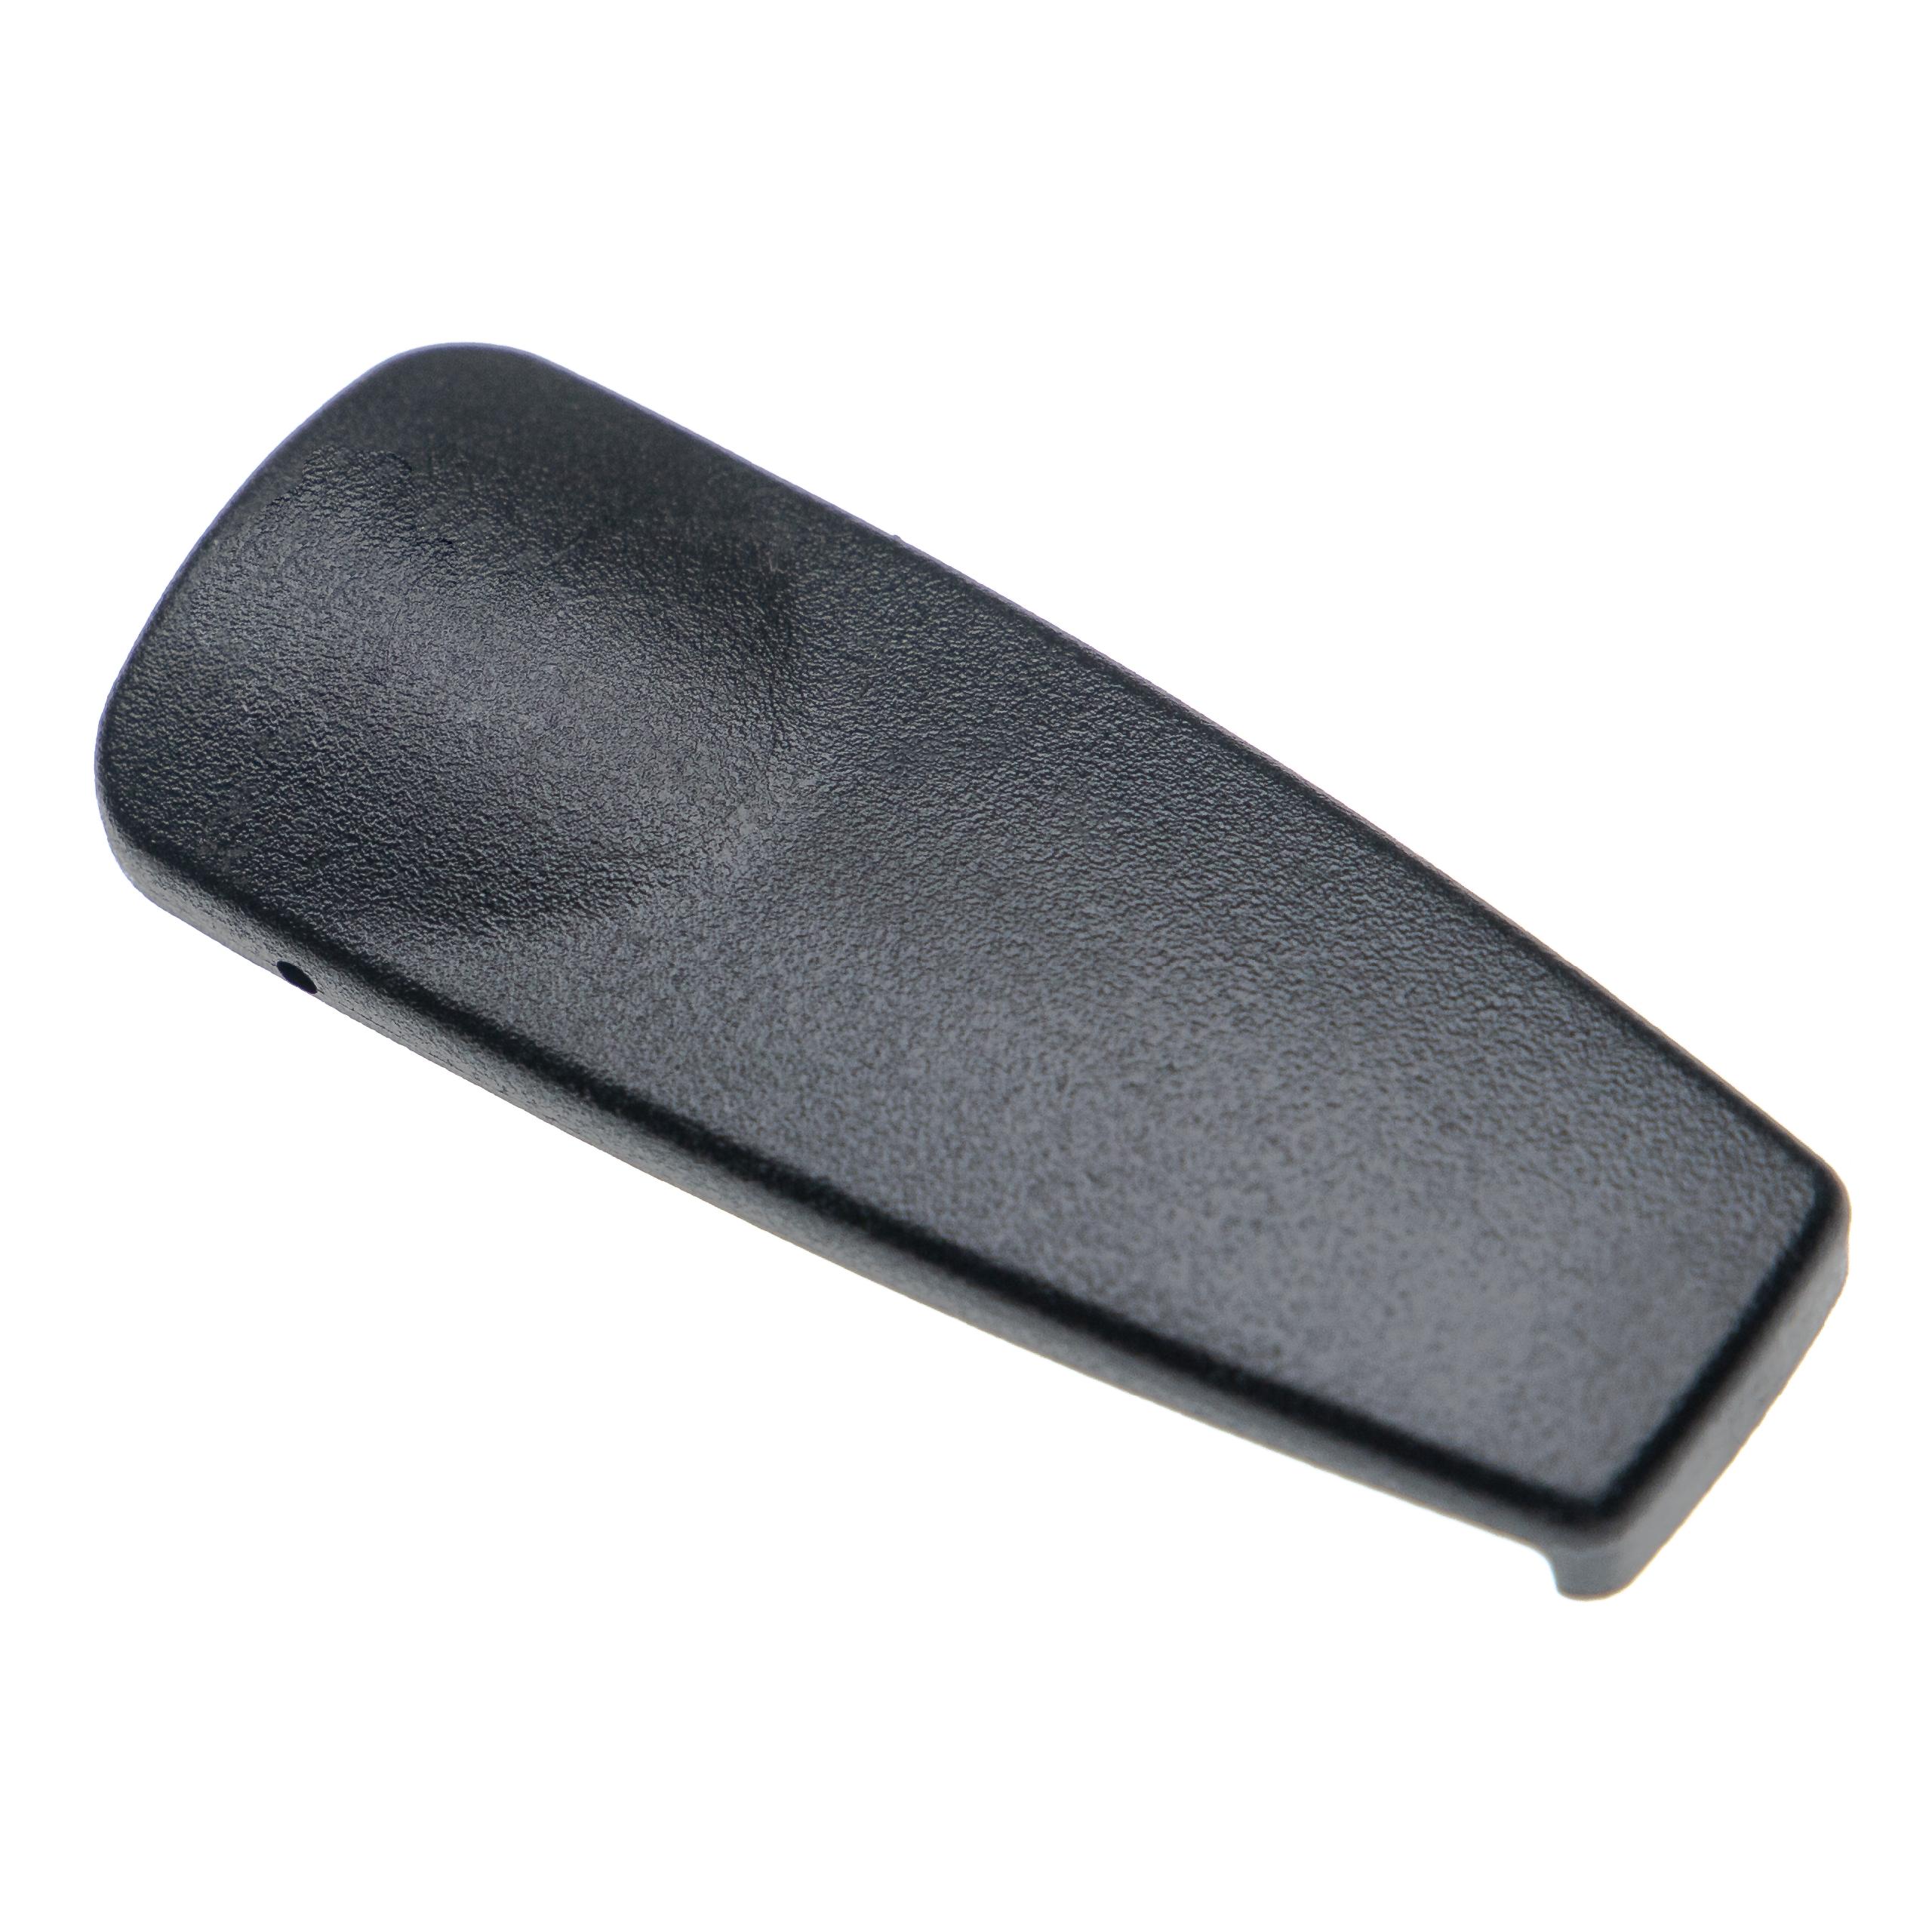 Belt Clip for GP330 Motorola Radio - Plastic, Black